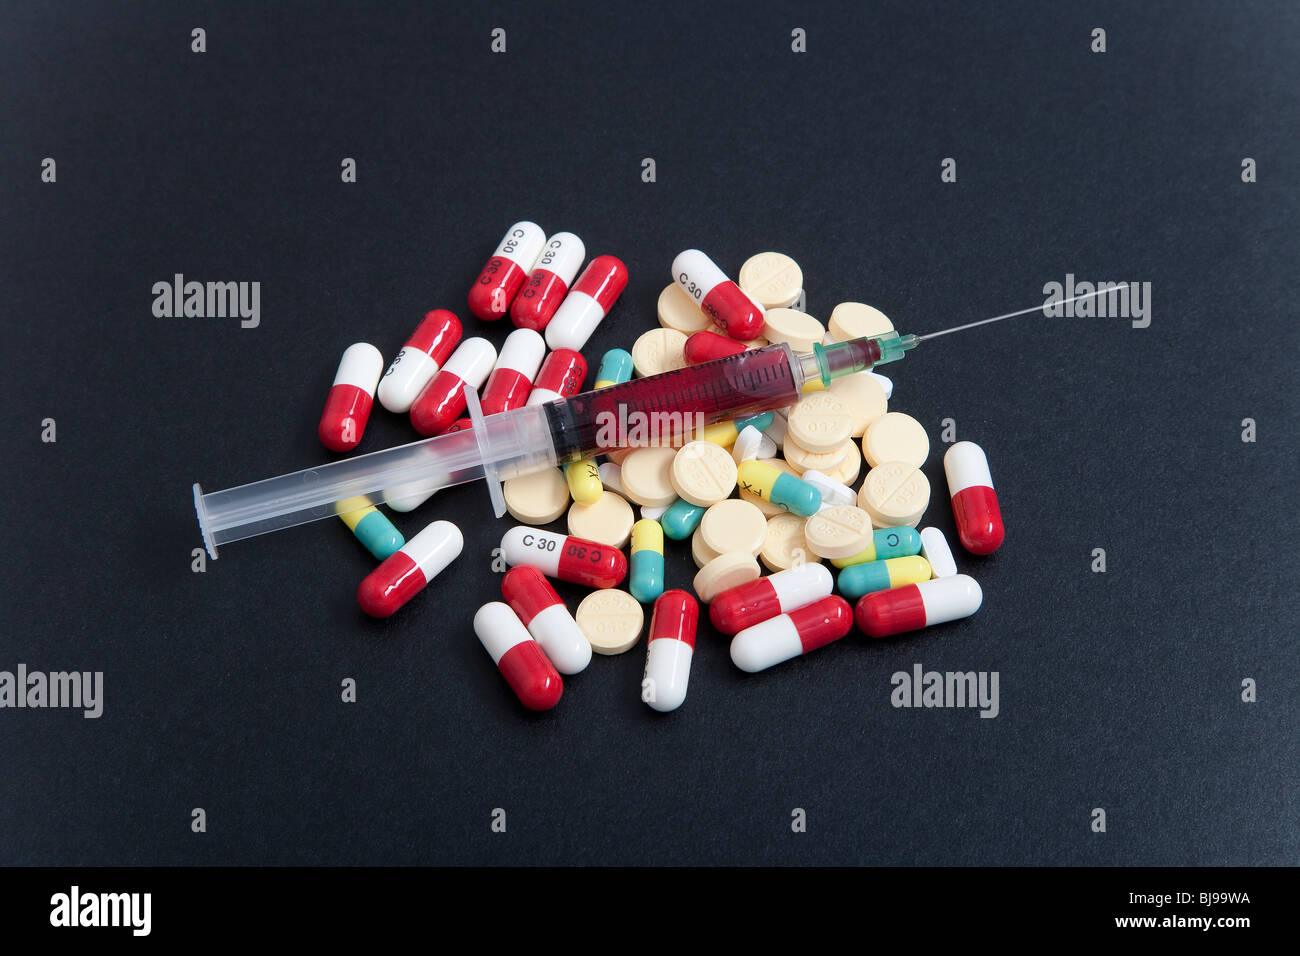 Medikament Paraphernalia equipment products oder Materialien und illegale Drogen Stockfoto